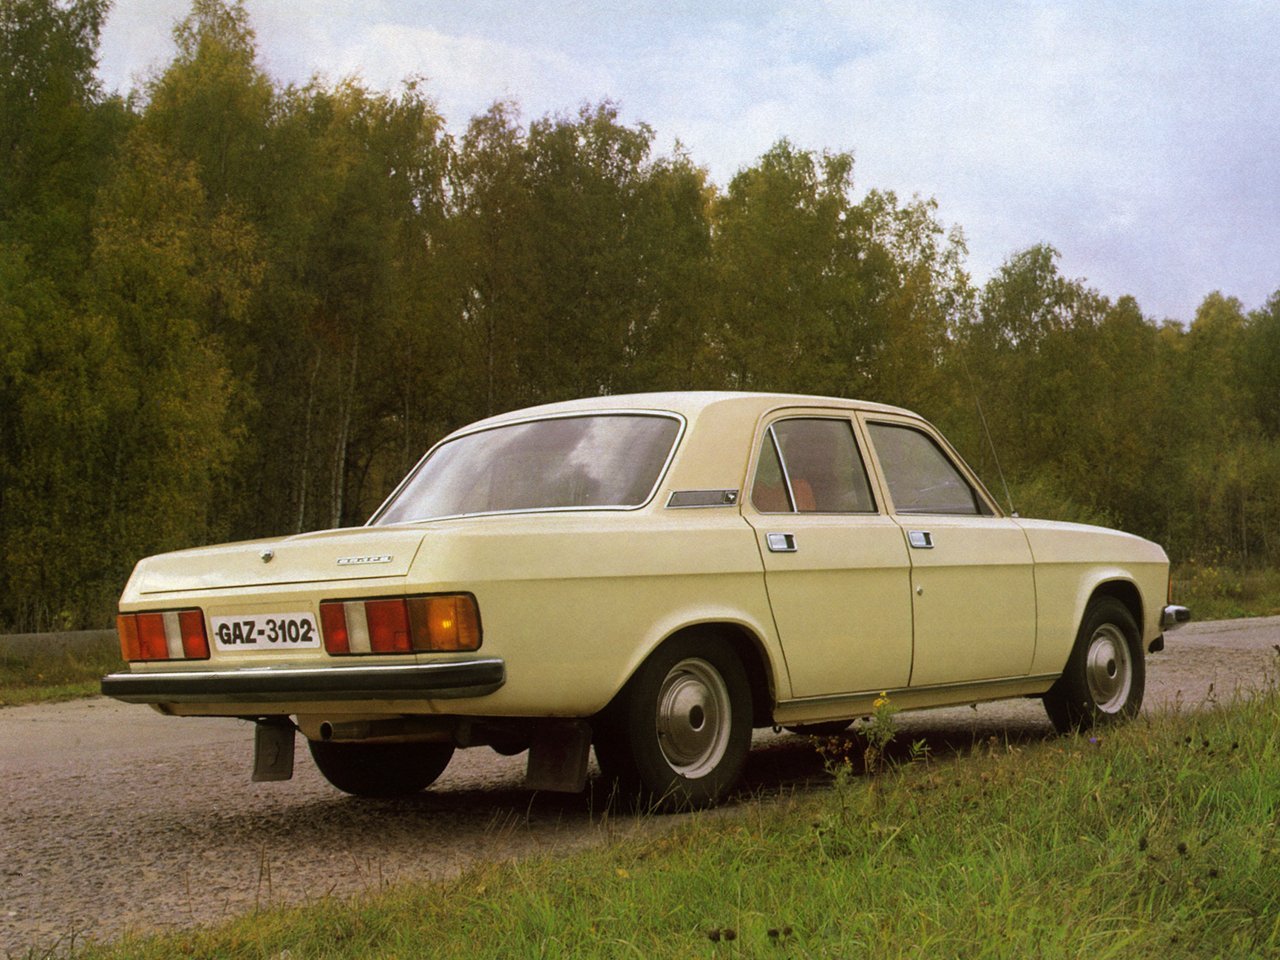 седан ГАЗ 3102 «Волга» 1981 - 2008г выпуска модификация 2.0 MT (136 л.с.)